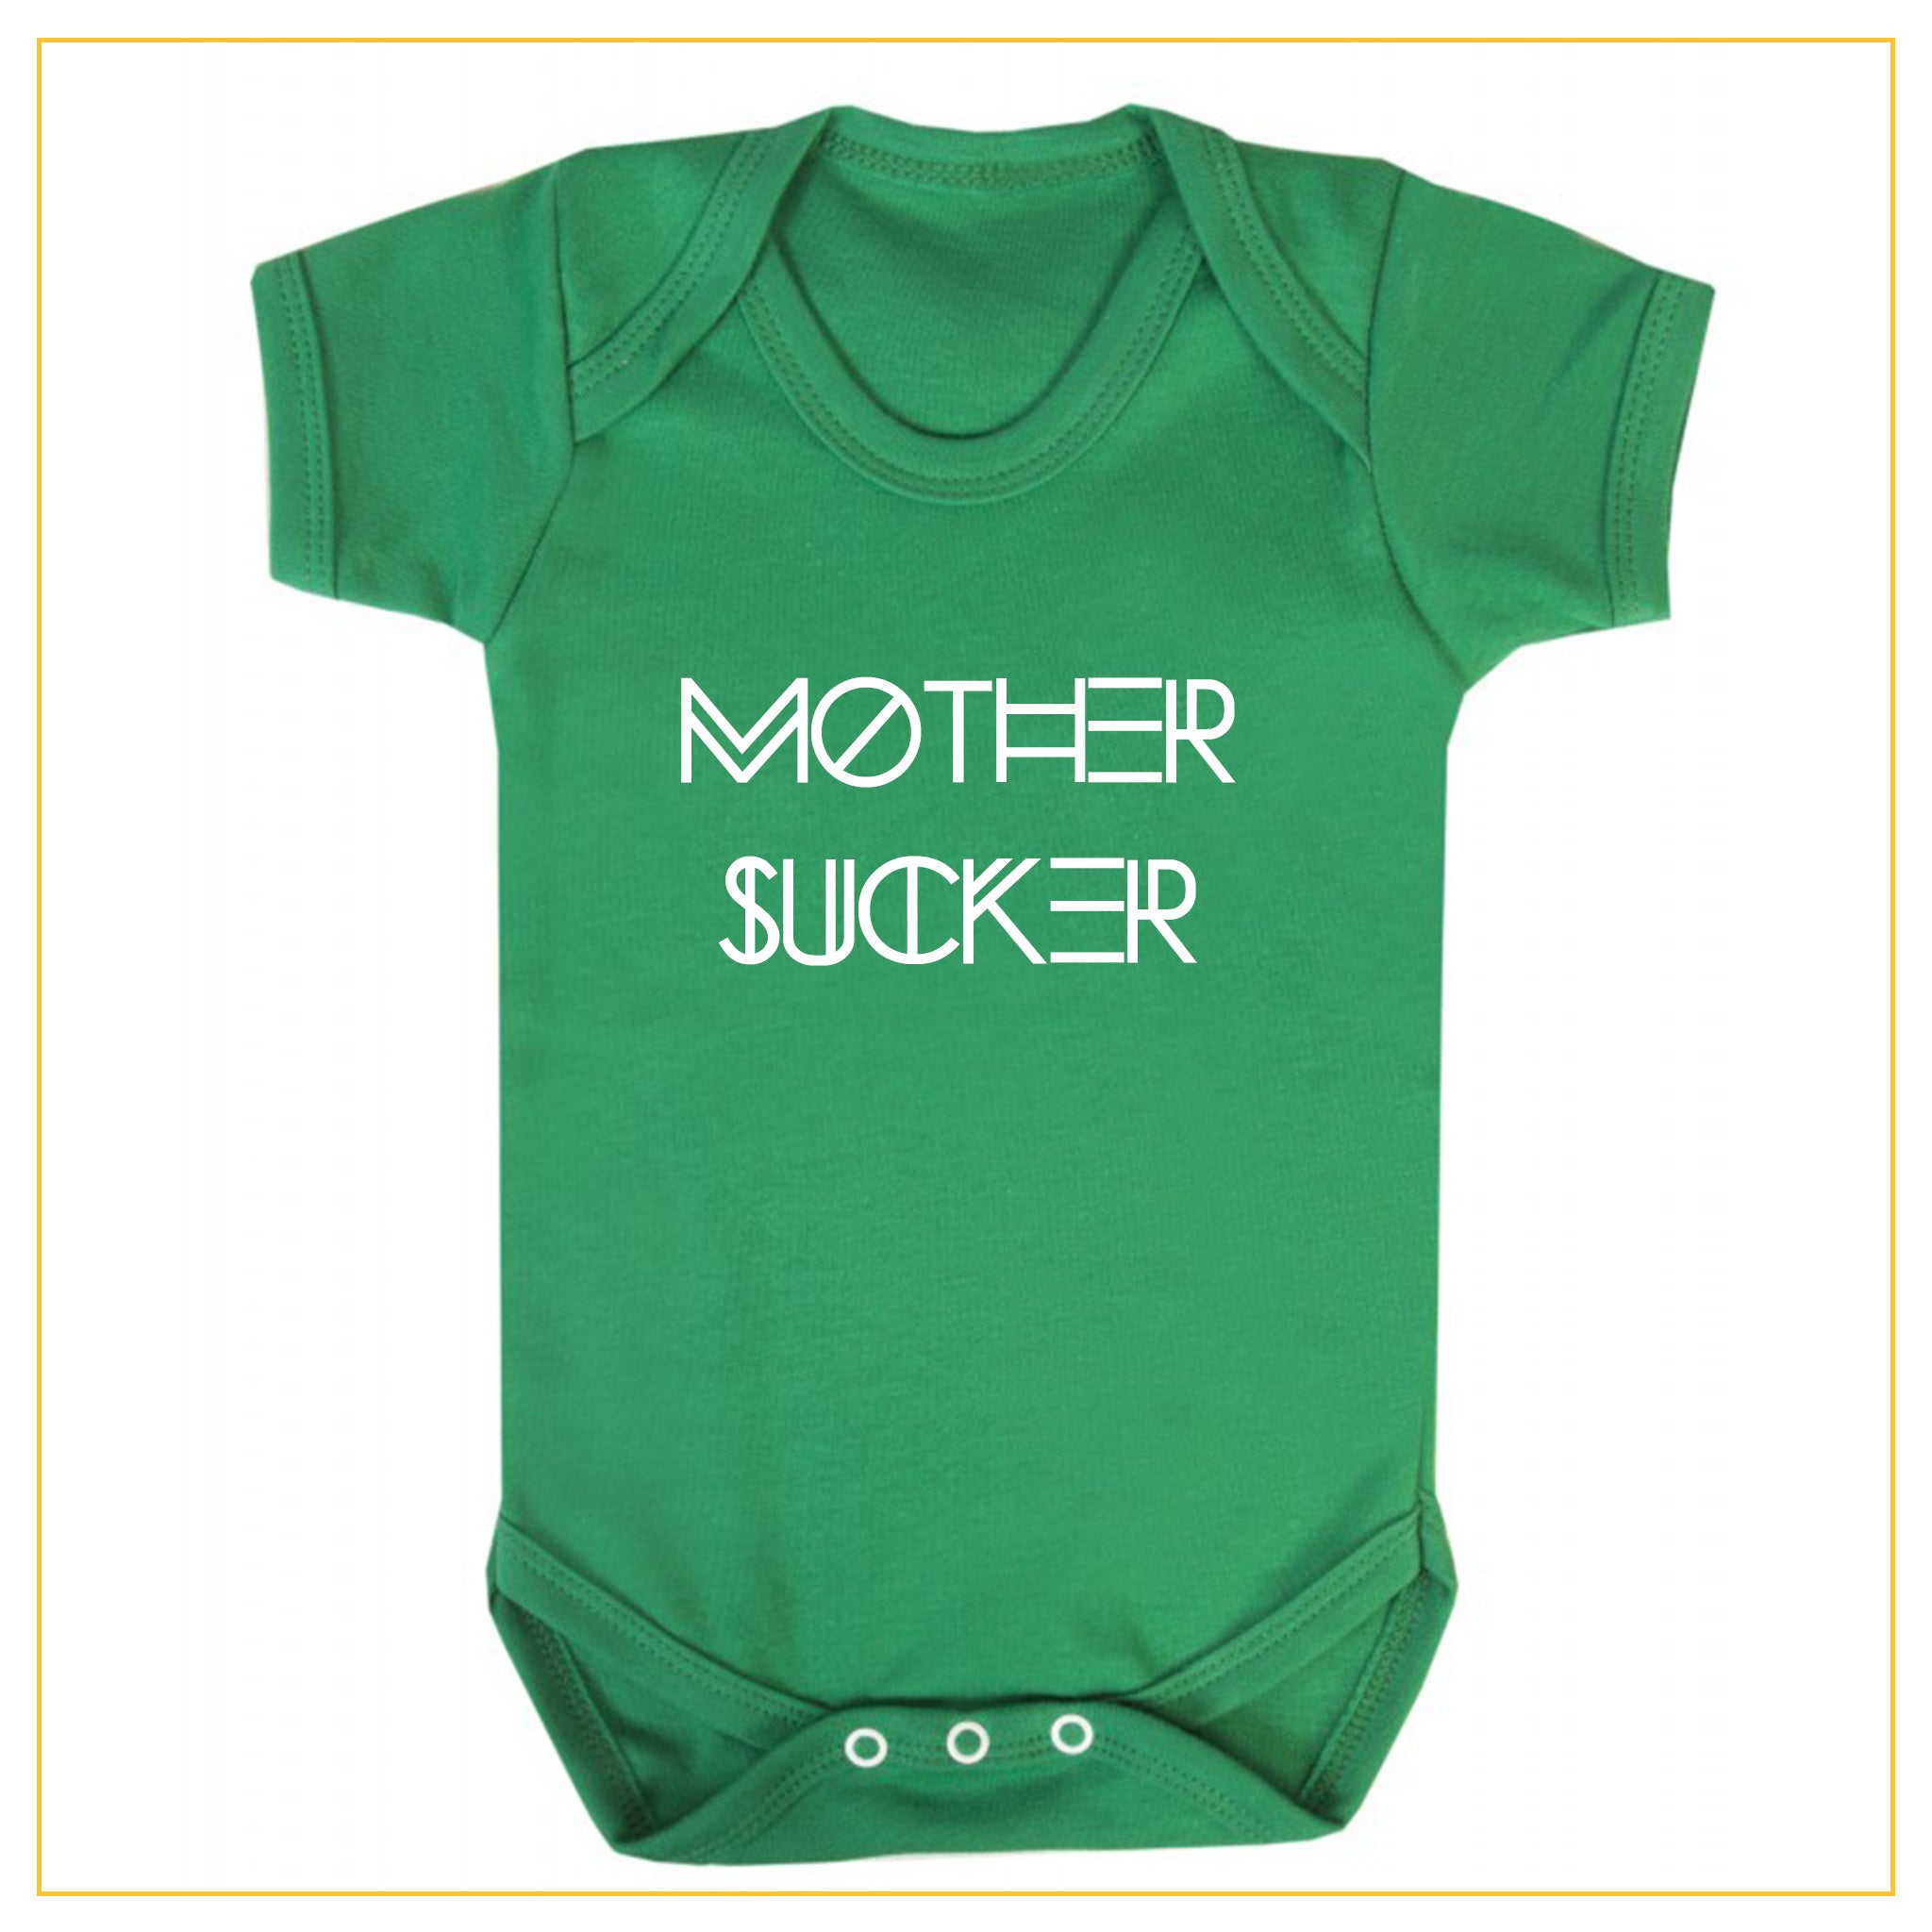 mother sucker novelty baby onesie in green